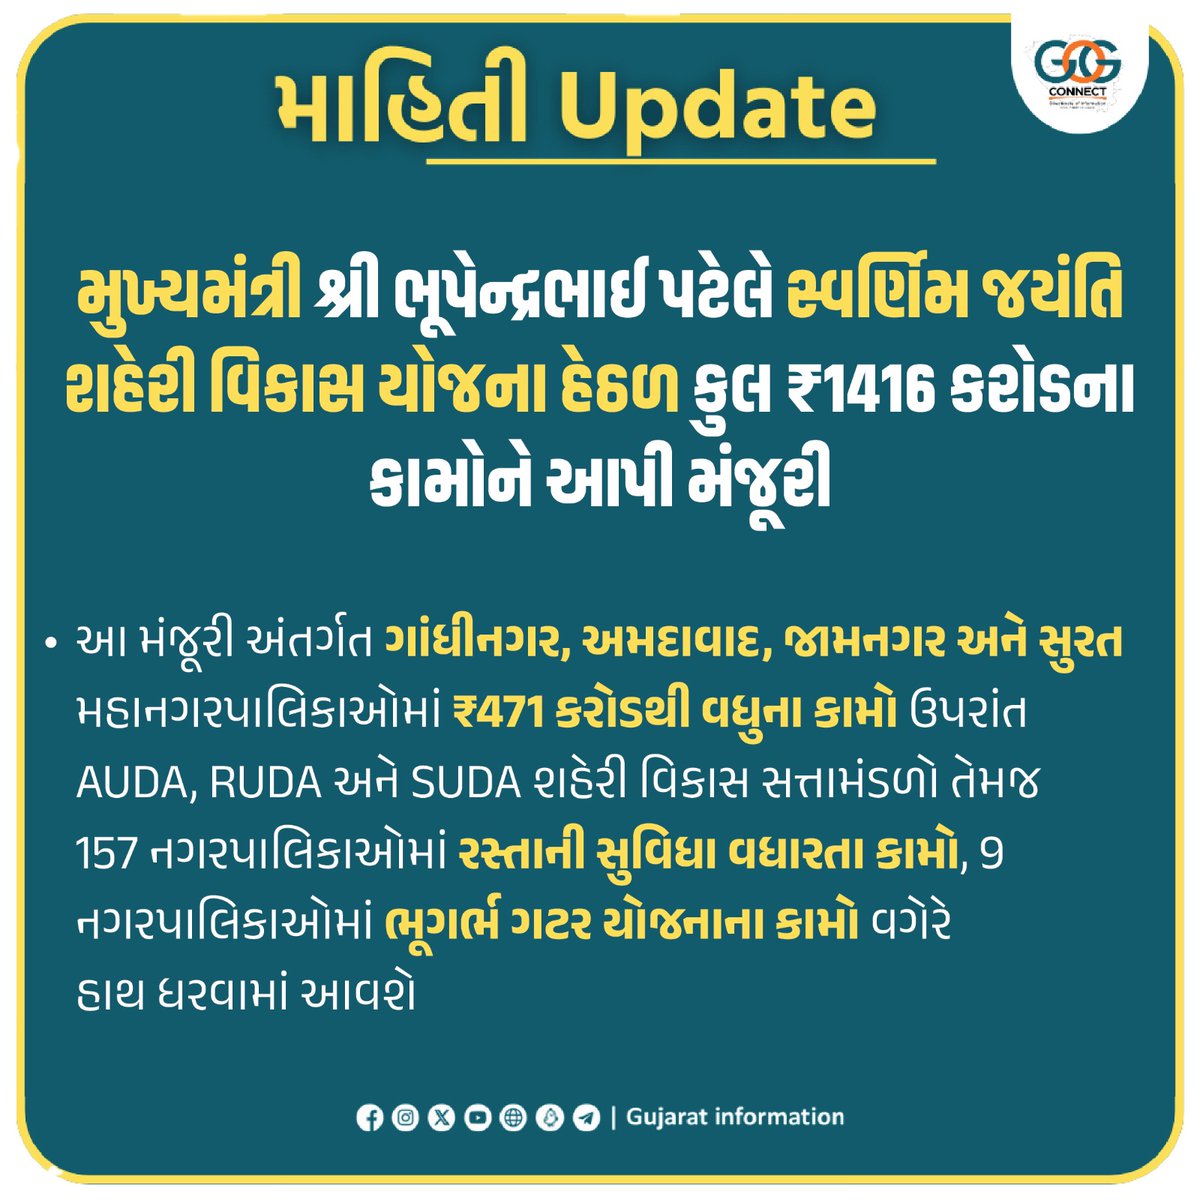 મુખ્યમંત્રી શ્રી ભૂપેન્દ્રભાઈ પટેલે સ્વર્ણિમ જયંતિ શહેરી વિકાસ યોજના હેઠળ કુલ ₹1416 કરોડના કામોને આપી મંજૂરી... #MahitiUpdate #SUDA #AUDA #RUDA #GujaratSarkar #Gujarat